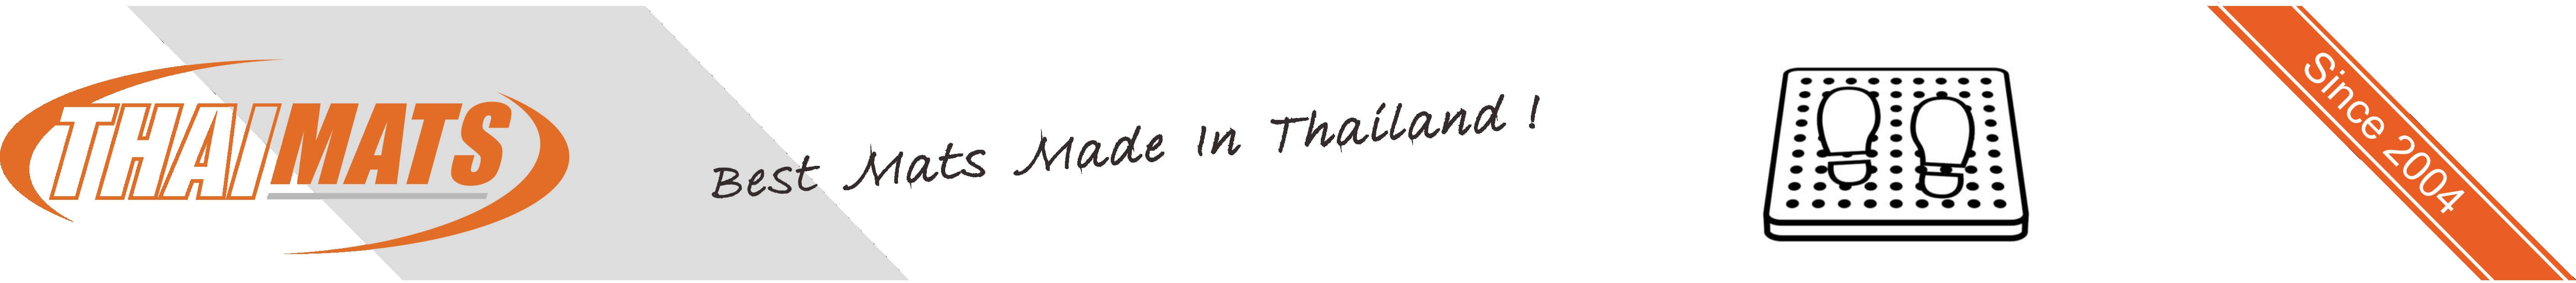 Thailand Mats